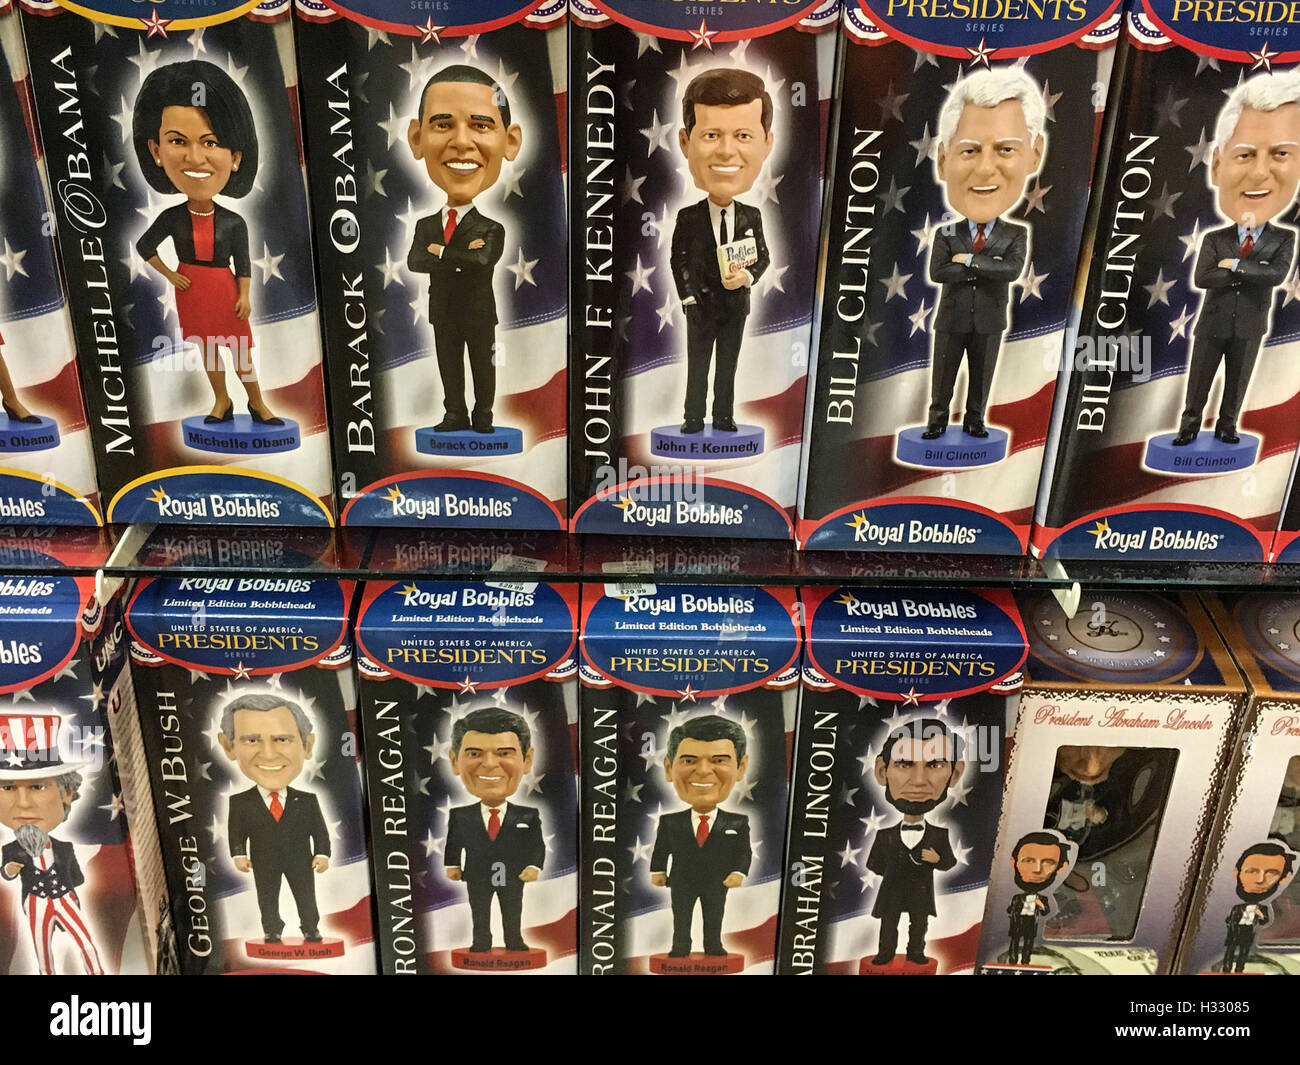 Des effigies de présidents américains sur différents points au cours de la campagne présidentielle américaine, USA Banque D'Images